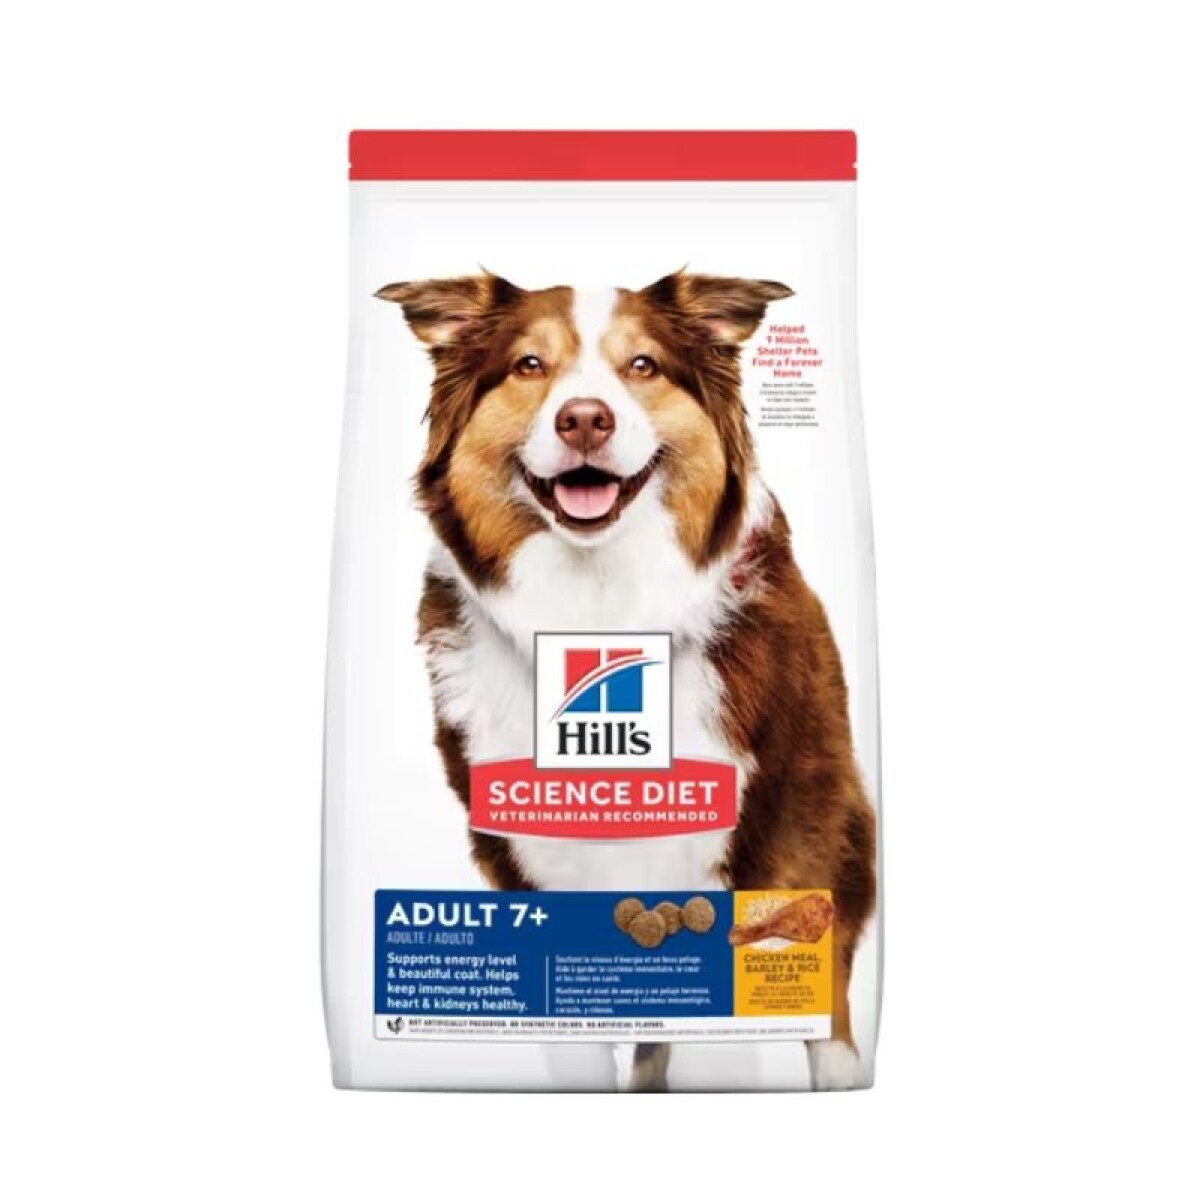 HILLS CANINE ADULT 7+ ORIGINAL 3KG - Hills Canine Adult 7+ Original 3kg 